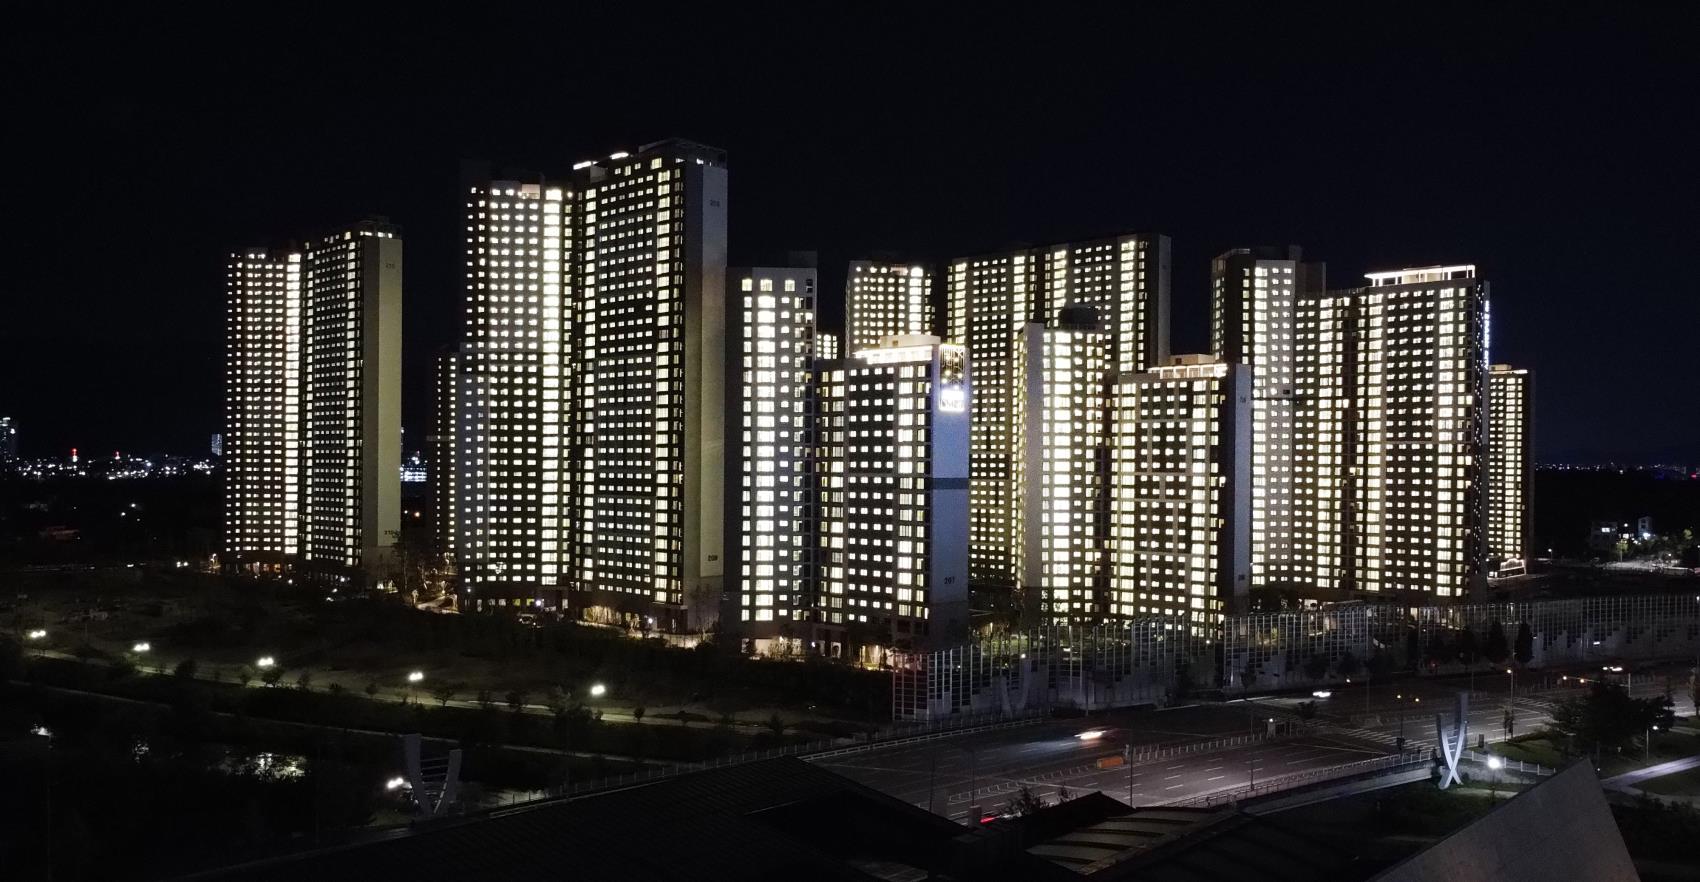 15일 오후 현대산업개발은 오는 11월 입주를 시작하는 대전시 유성구 `대전아이파크시티` 아파트의 야간 점등식을 진행했다. 윤종운 기자
